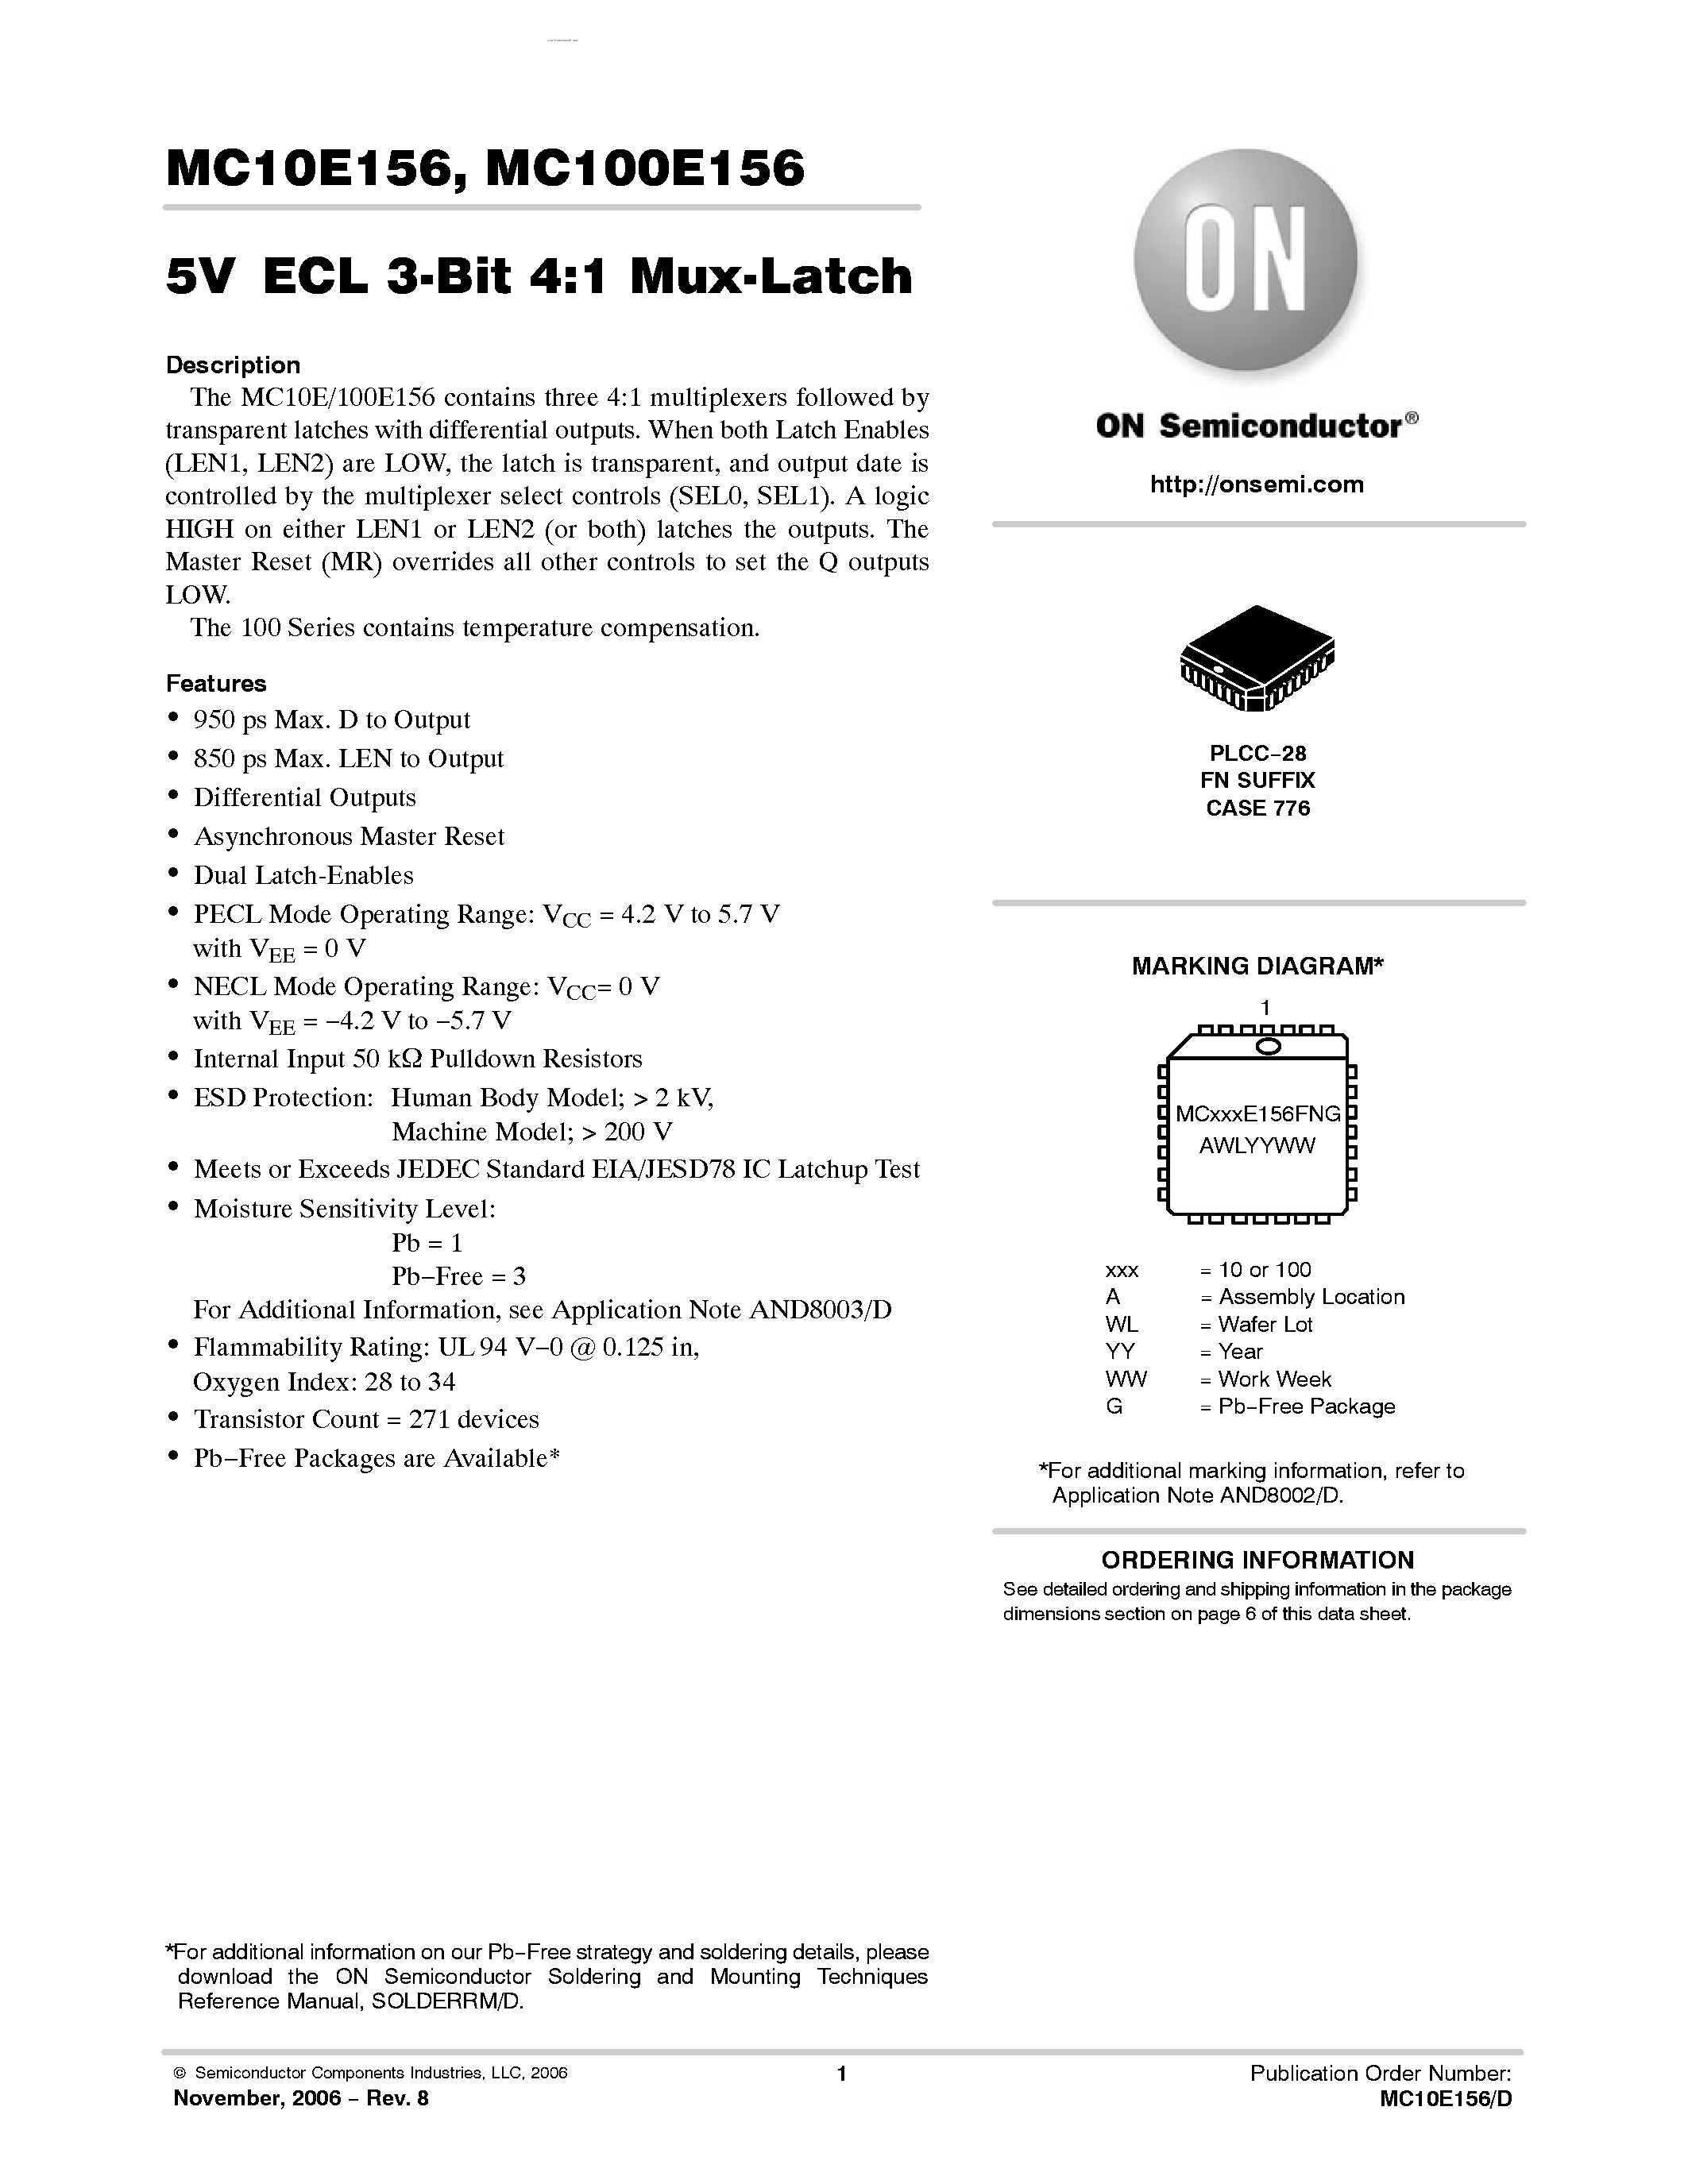 Datasheet MC100E156 - 3-BIT 4:1 MUX-LATCH page 1